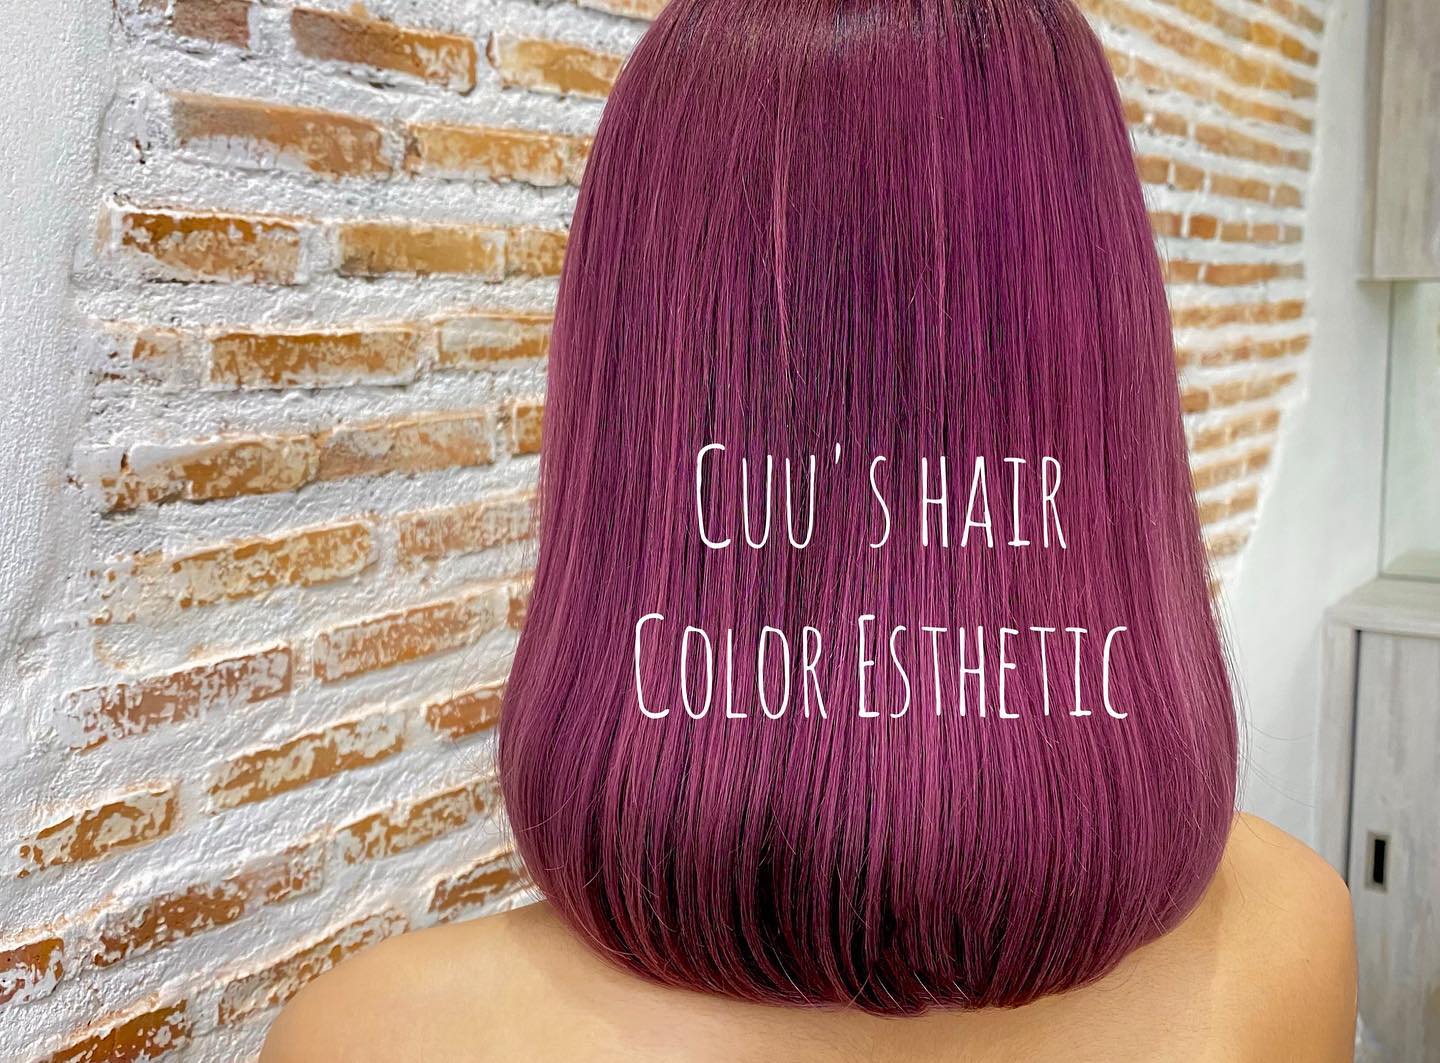 เมนูยอดนิยมของCuu’s hair 
Color Esthetic
7300 บาท → 4600 บาท
ตัด ,ทำสี ,ให้คำปรึกษา, ดีท็อกซ์หนังศีรษะ,สระผม, แชมพู ,ทรีทเม้นท์, เซ็ท, เป่า,การรับประกัน (ฟรี) ปรึกษาทางไลน์ (ฟรี) + ตัดหน้าม้าหลังทำ 3 สัปดาห์  ระยะเวลาที่ใช้ : ประมาณ 3 ชั่วโมง  ทำสี ดัด ยืด ทรีทเม้นท์
เซ็ตเมนูทั้งหมดใช้โปรตีนคุณภาพสูงจากธรรมชาติ เซราไมด์ คอลลาเจน กรดอะมิโน และกรดไฮยาลูโรนิกจากธรรมชาติให้กับเส้นผมเพื่อให้สารอาหารซึมซาบเข้าสู่เส้นผม เพื่อป้องกันไม่ให้สารอาหารและน้ำที่หล่อเลี้ยงหลุดออกมา พร้อมทั้งยังเติมส่วนผสมที่ให้ความชุ่มชื้นตามธรรมชาติจากกับเส้นผมและหนังศีรษะ ฉะนั้นสภาวะแวดล้อมต่างๆจึงไม่ทำให้เกิดความเครียดกับเส้นผมและหนังศีรษะหลังทำ  IG:cuushair
Facebook : Cuu's​ hair
TEL : 02-065-0909
#bangkok #thonglor #bangkokhairsalon #ผม #เกาหลี #ม้วนผมเกาหลี #ร้านเสริมสวย #ดัดผม #สไตล์เกาหลี #hairesthetic #organic